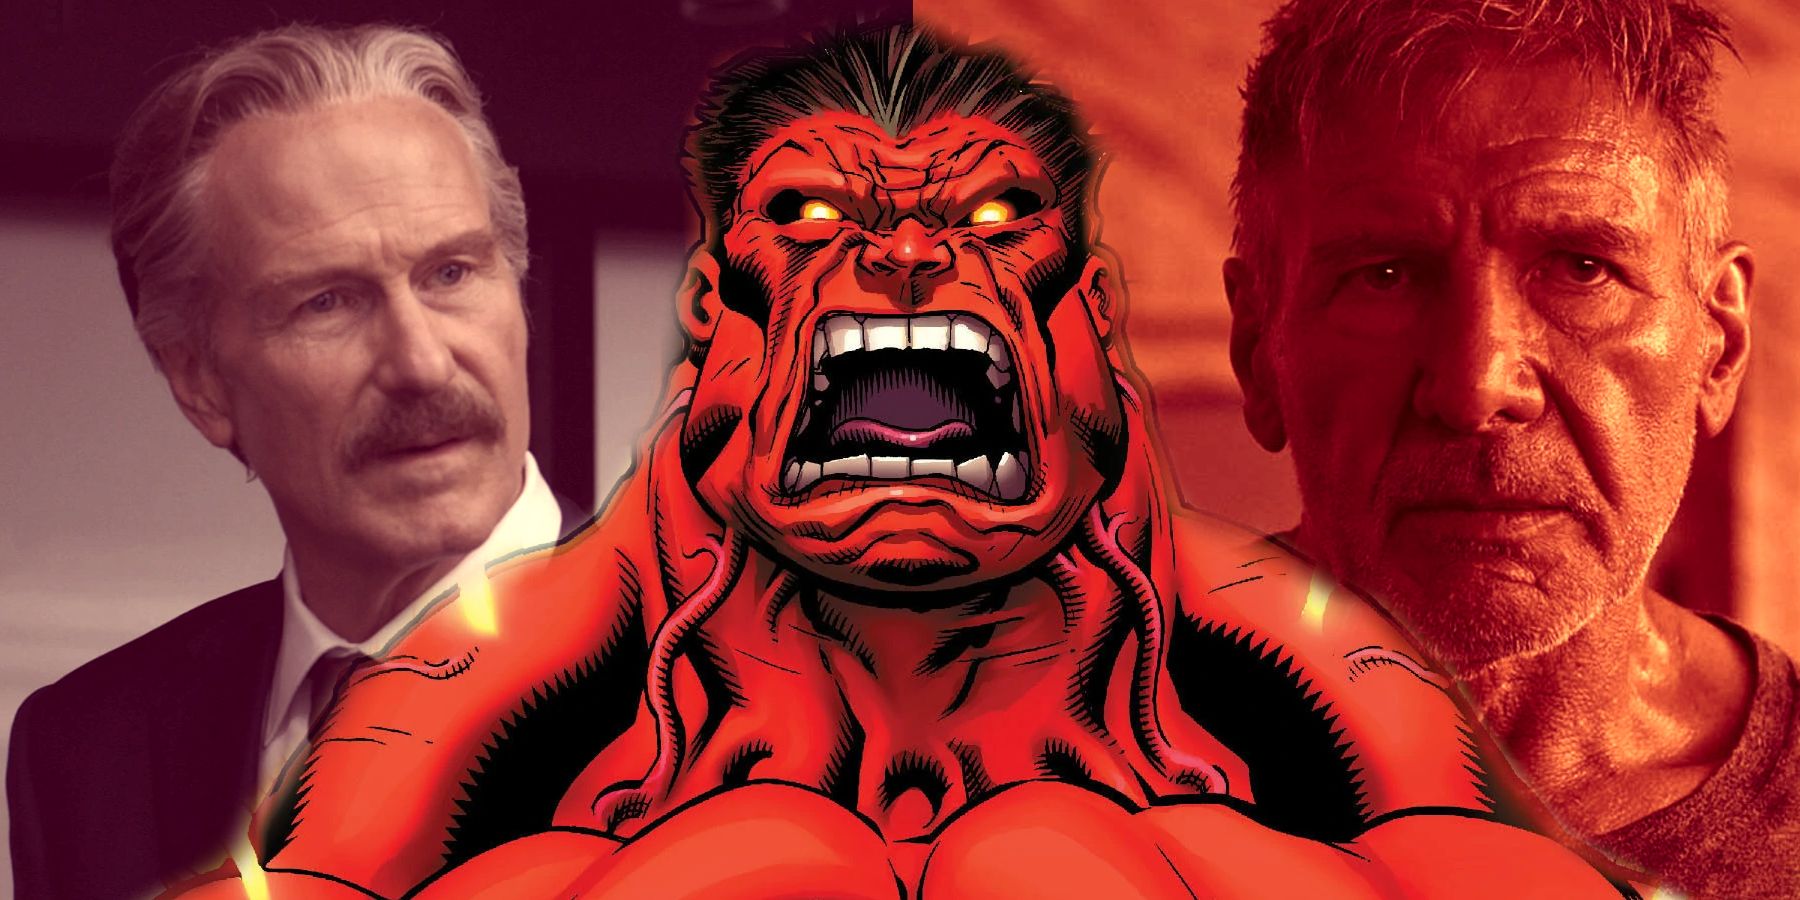 Image fractionnée : le général Ross (William Hurt) semble inquiet ;  la bande dessinée Red Hulk hurle de rage;  Harrison Ford dans le rôle de Deckard Shaw dans Blade Runner 2049